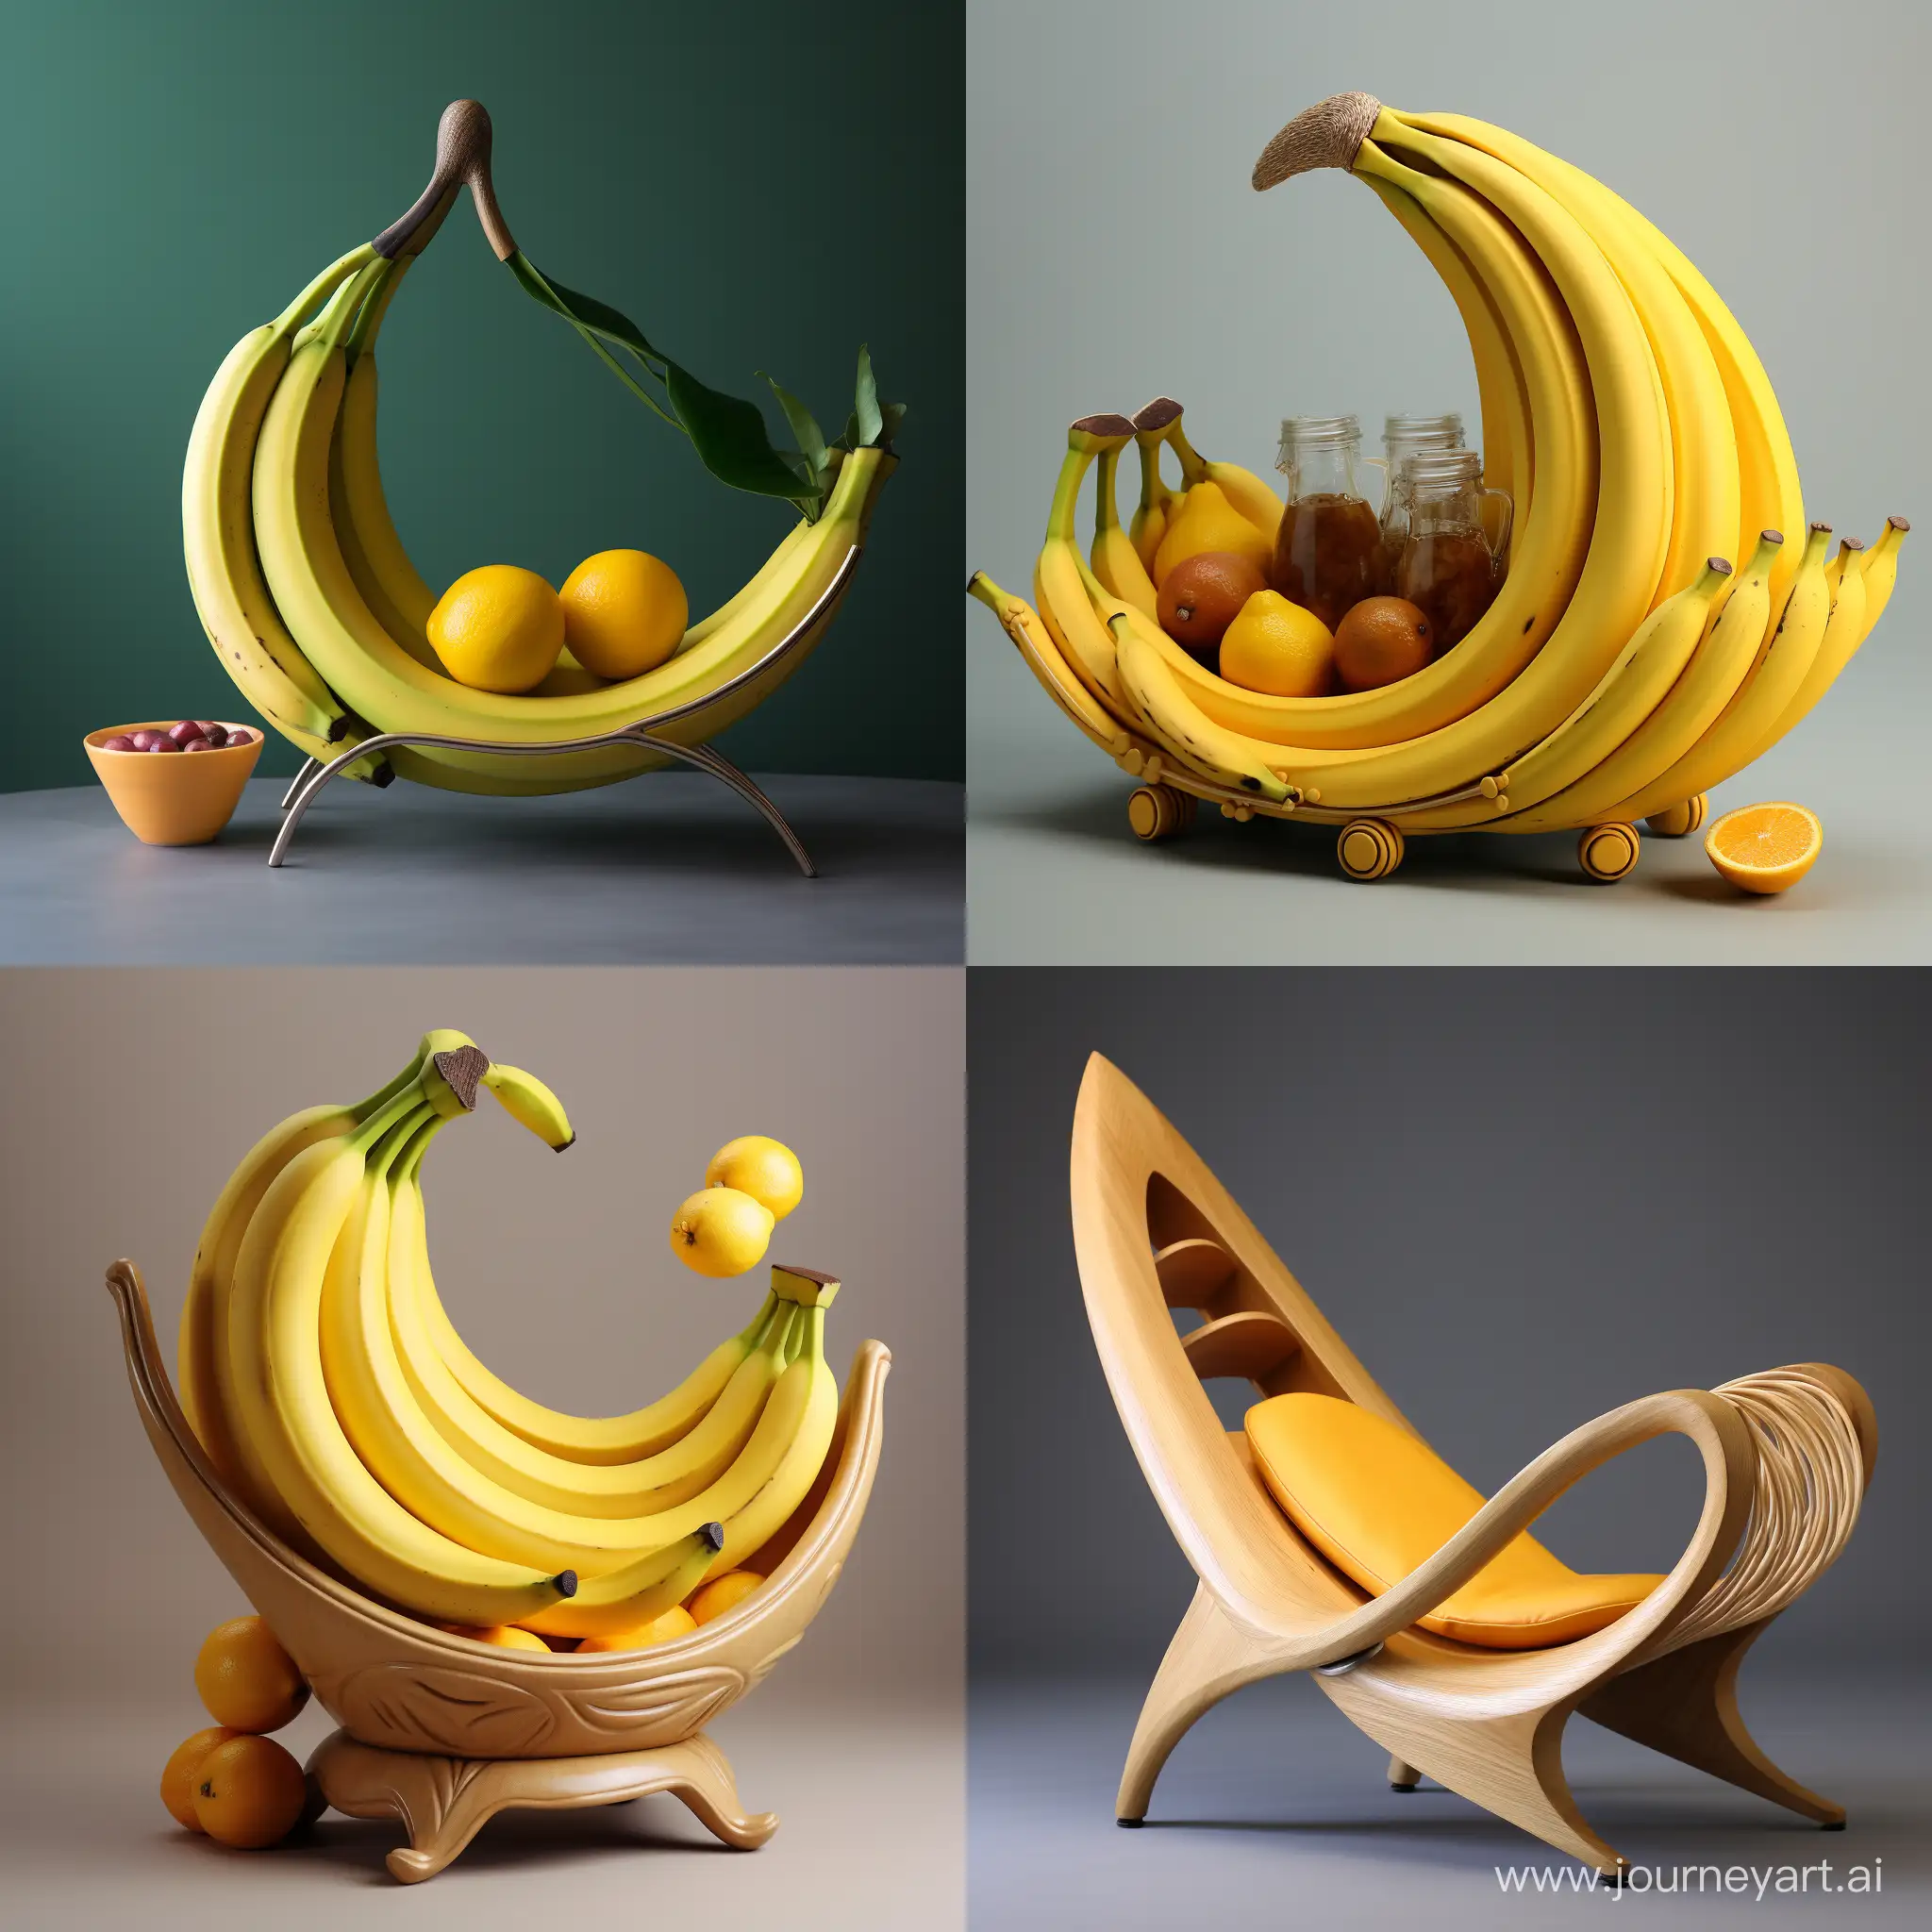 Elegant-Wooden-Banana-Holder-for-Stylish-Kitchen-Organization